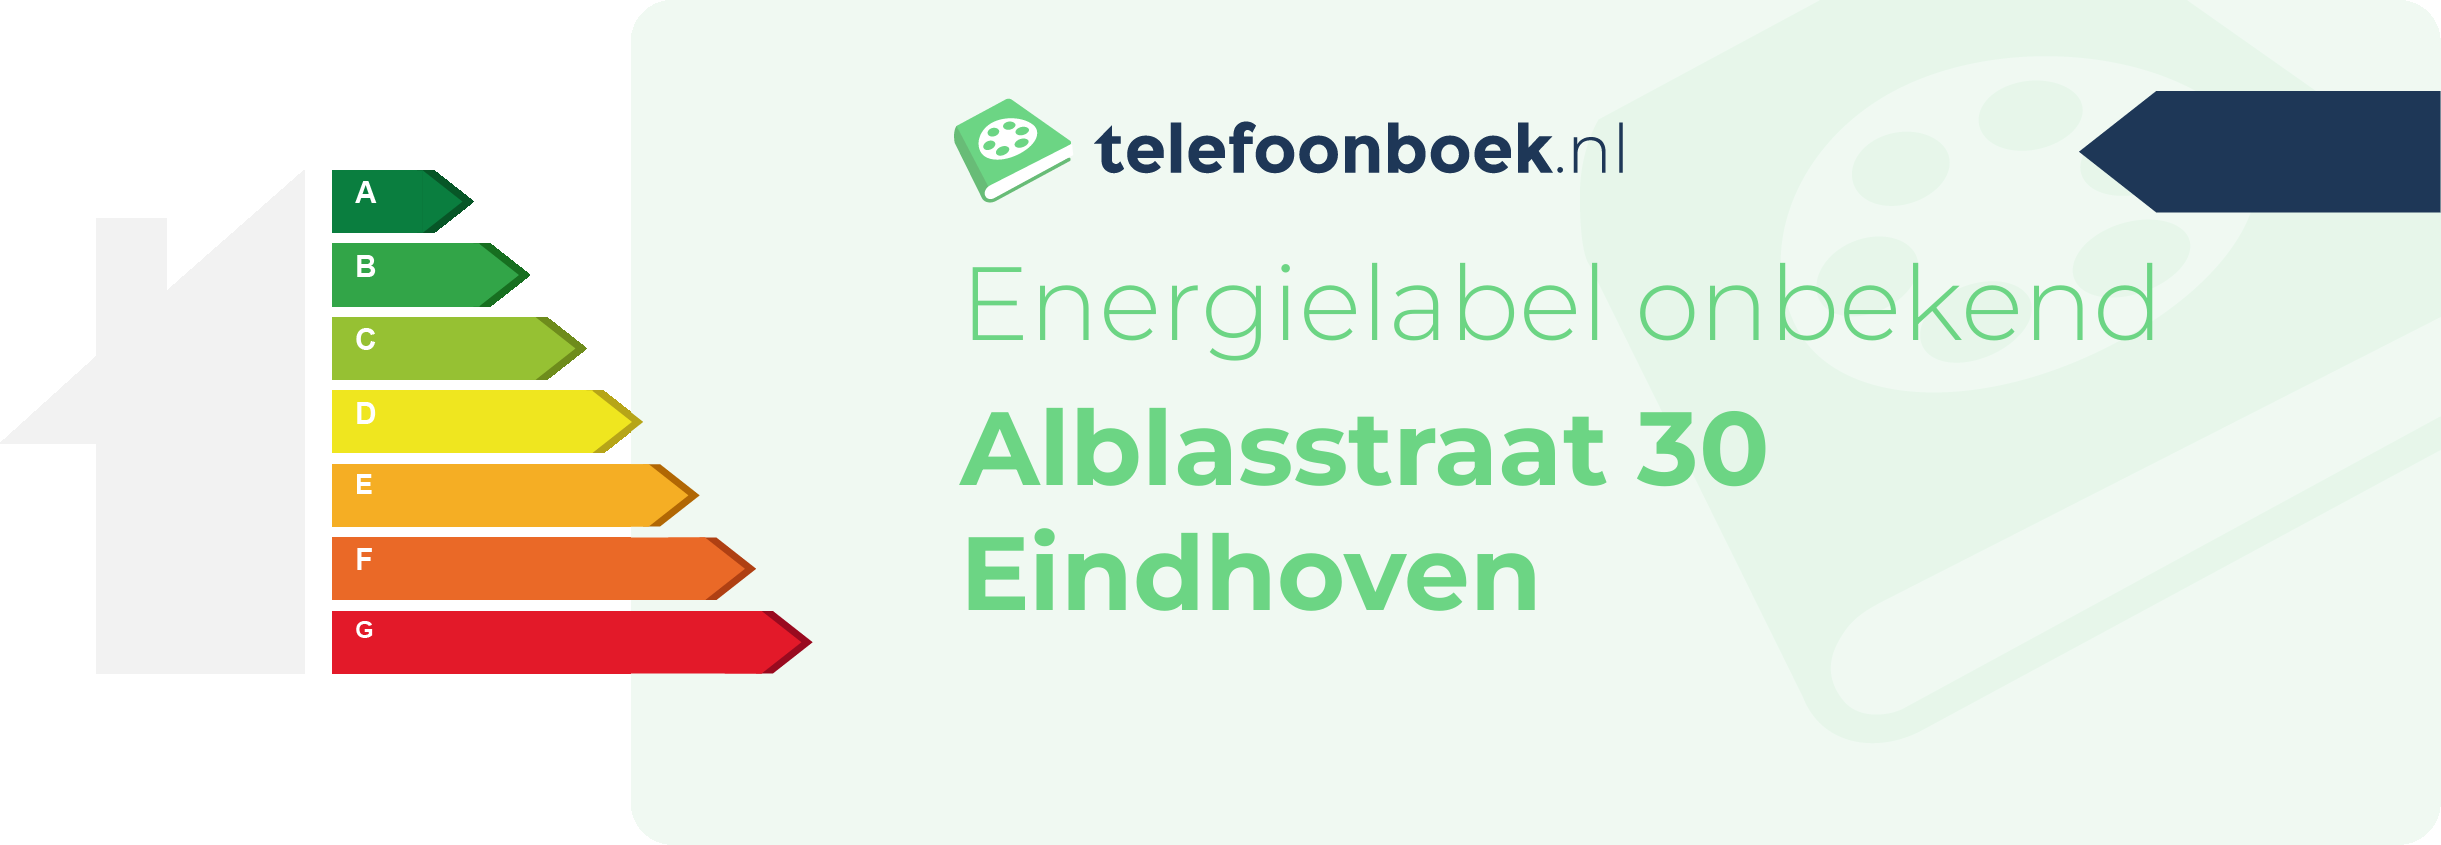 Energielabel Alblasstraat 30 Eindhoven